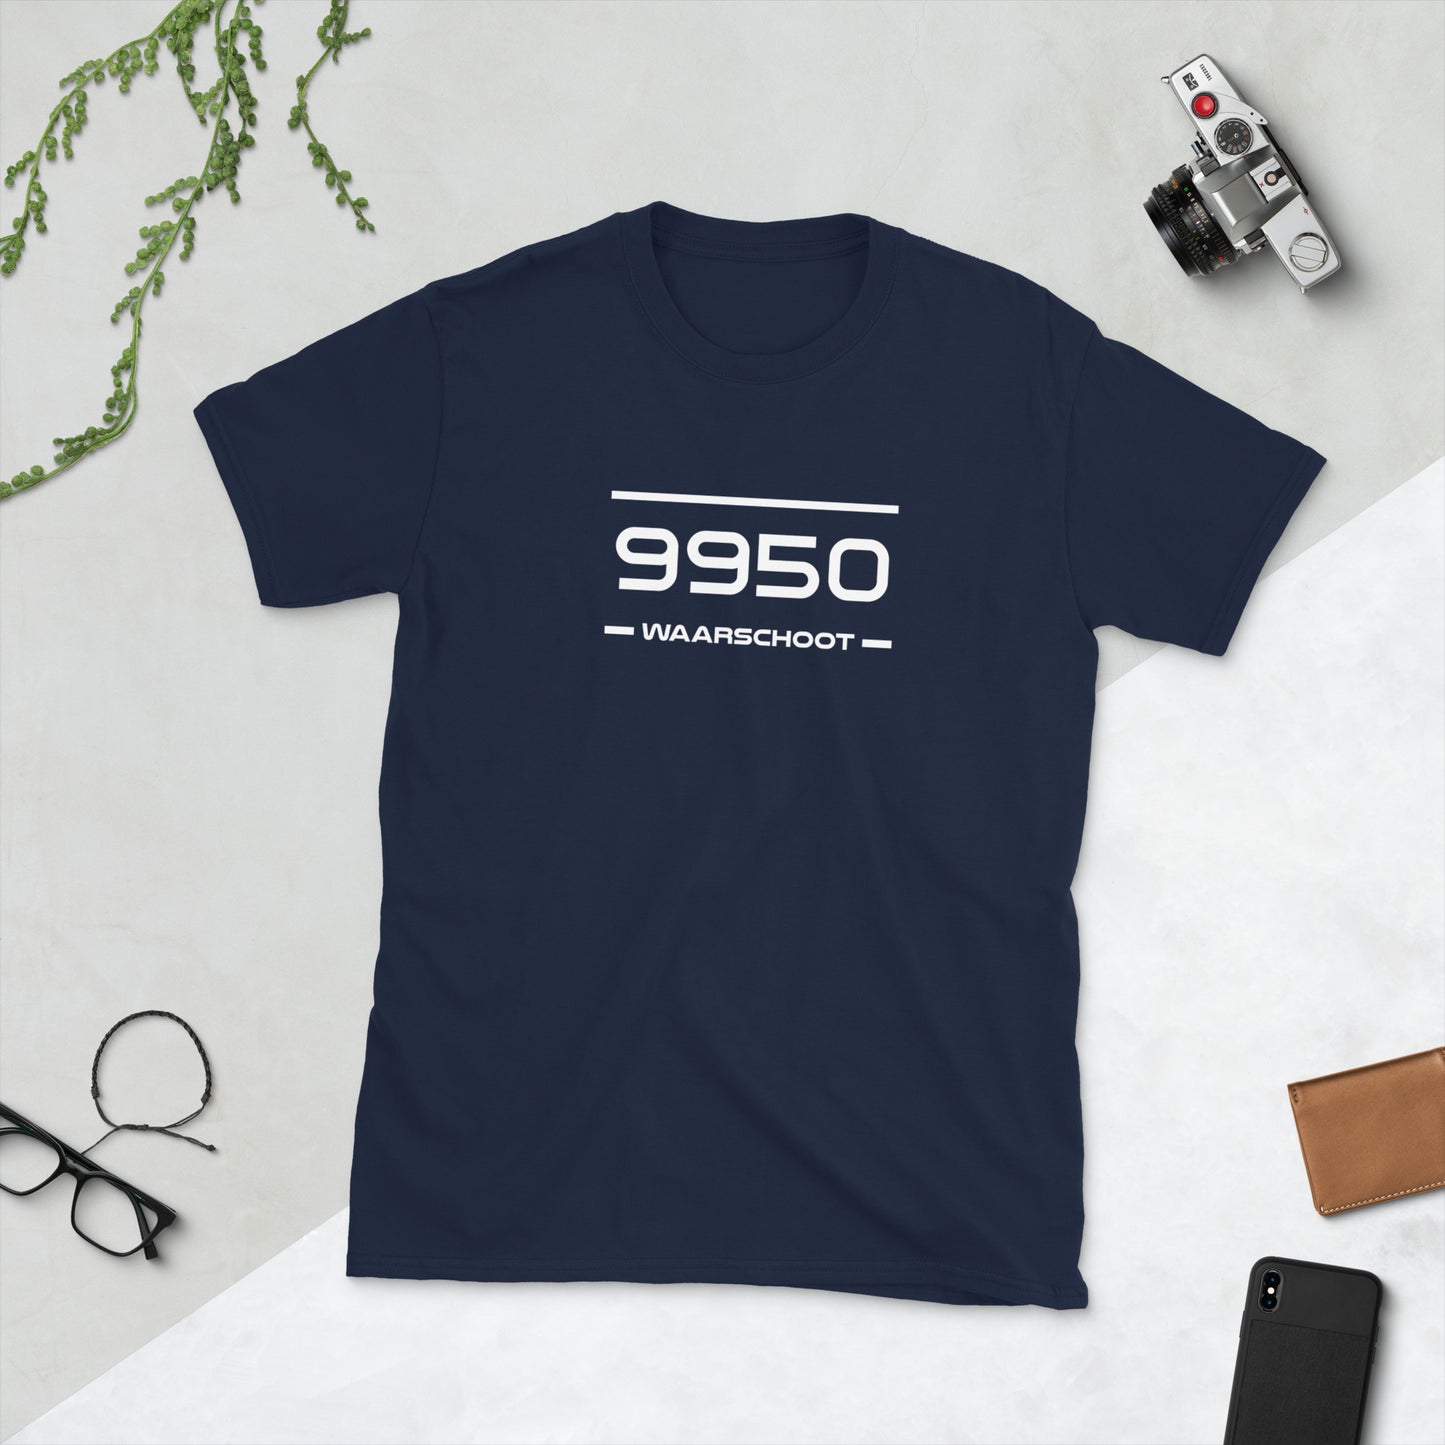 Tshirt - 9950 - Waarschoot